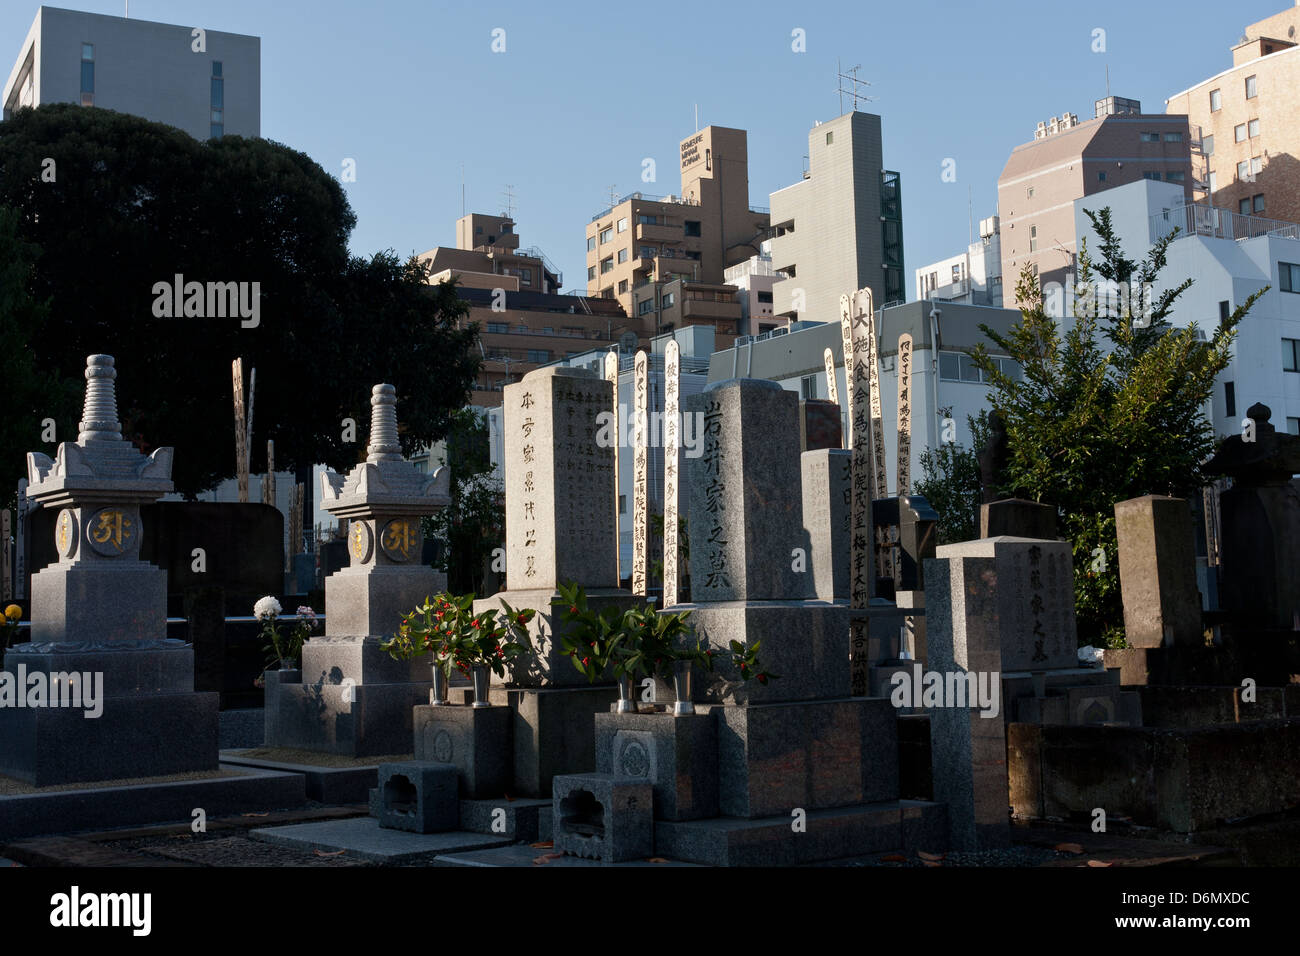 Tombes japonaises dans le cimetière d'Aoyama, Tokyo, Japon Banque D'Images